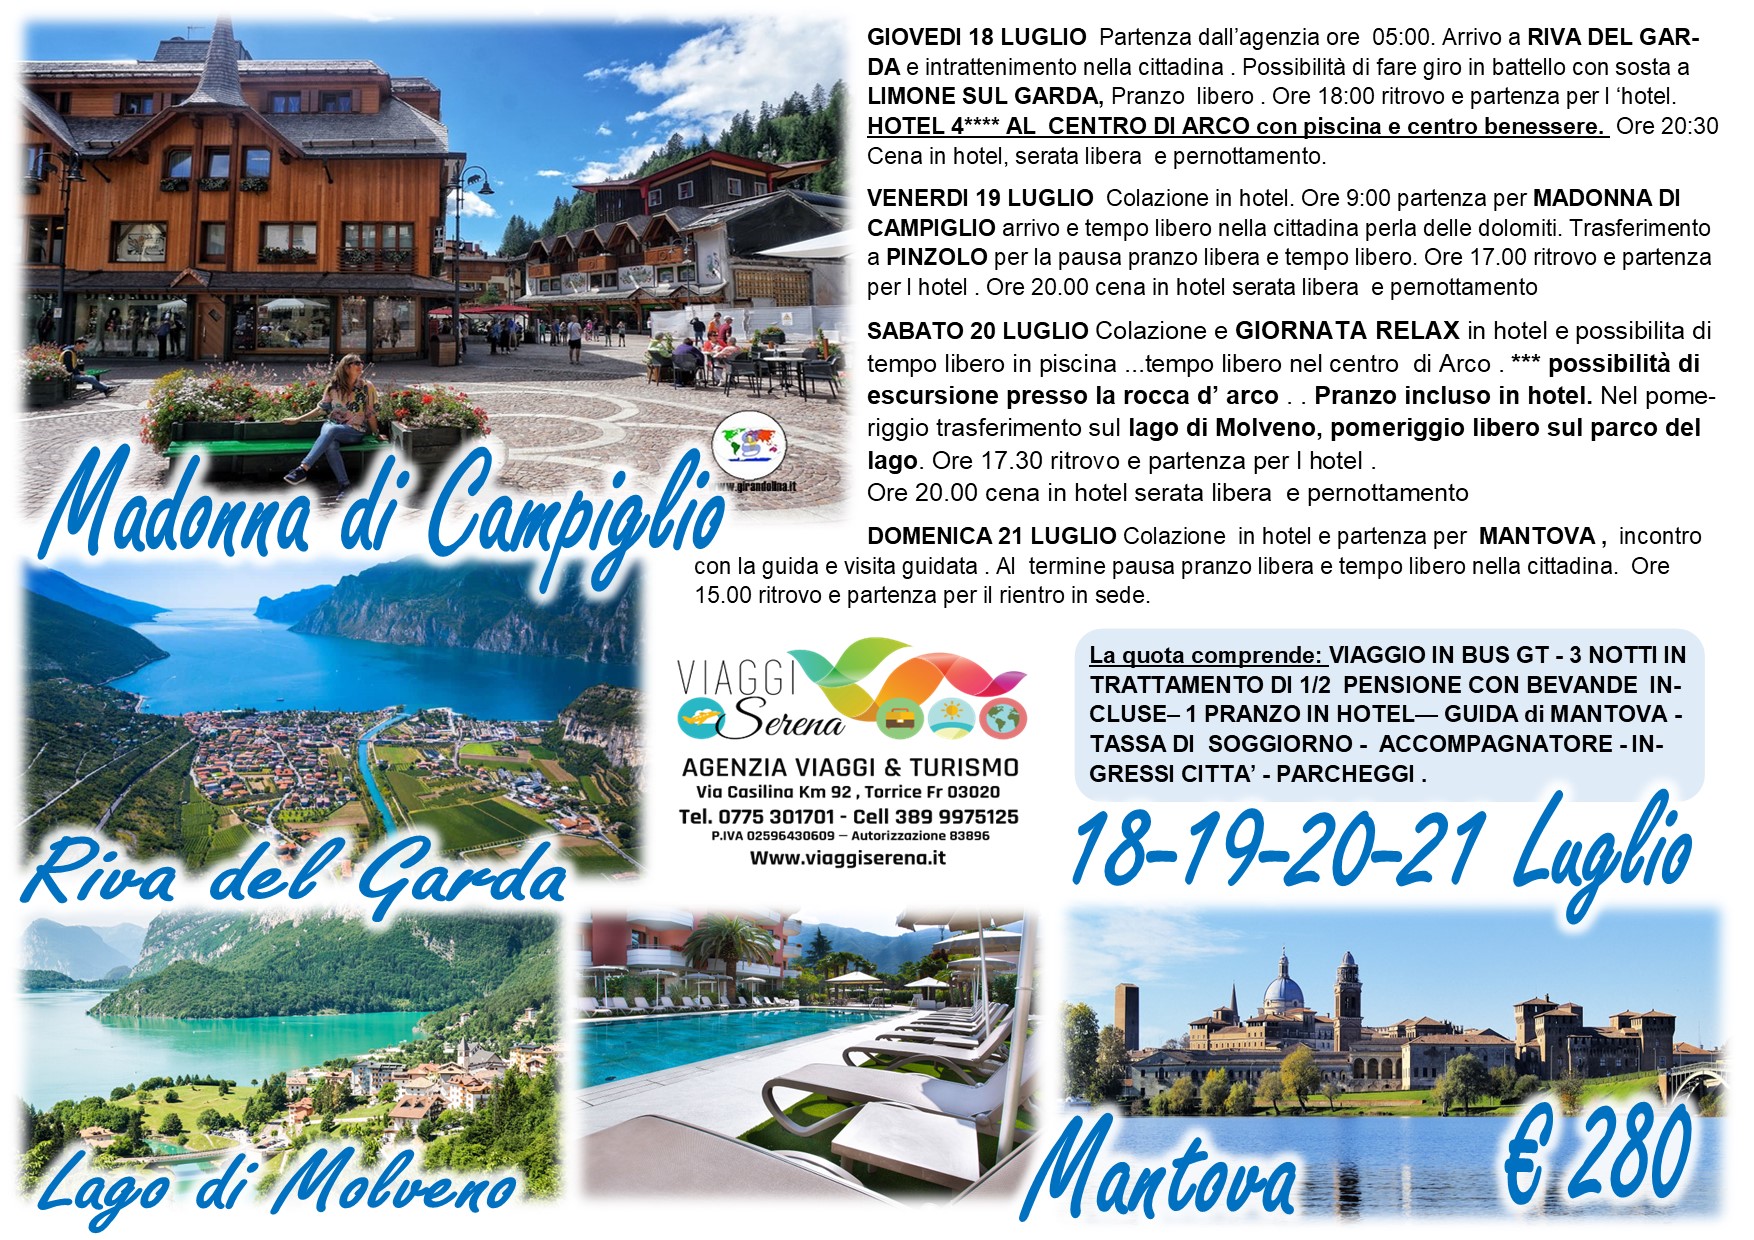 Viaggi di gruppo: Madonna di Campiglio , Riva del Garda, Lago di Molveno & Arco 18-19-20-21 Luglio €280,00